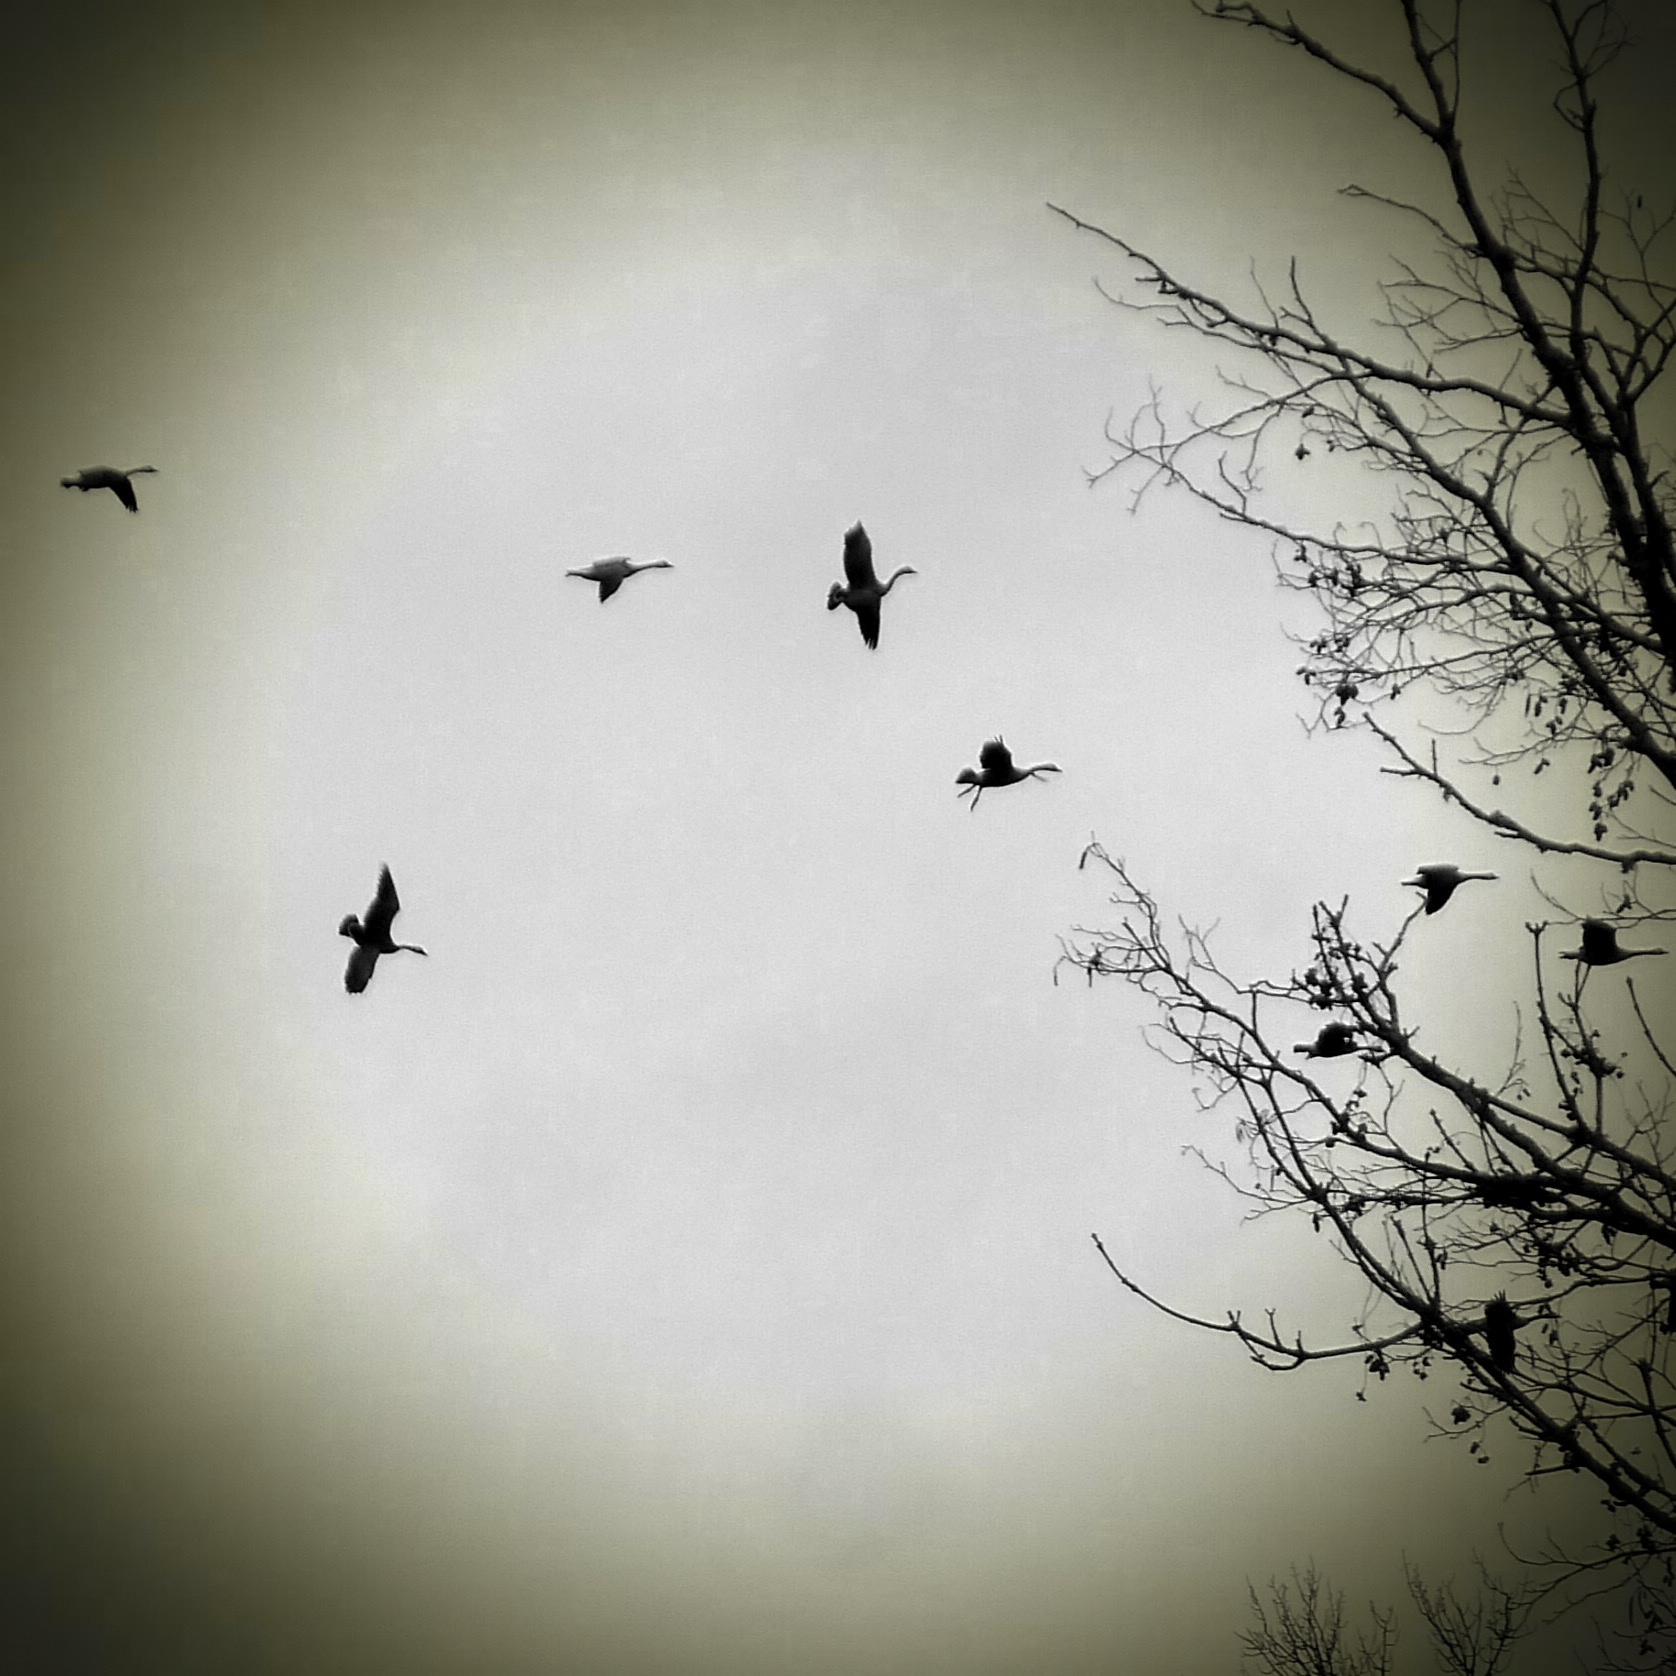 a flock of birds fly through the cloudy sky